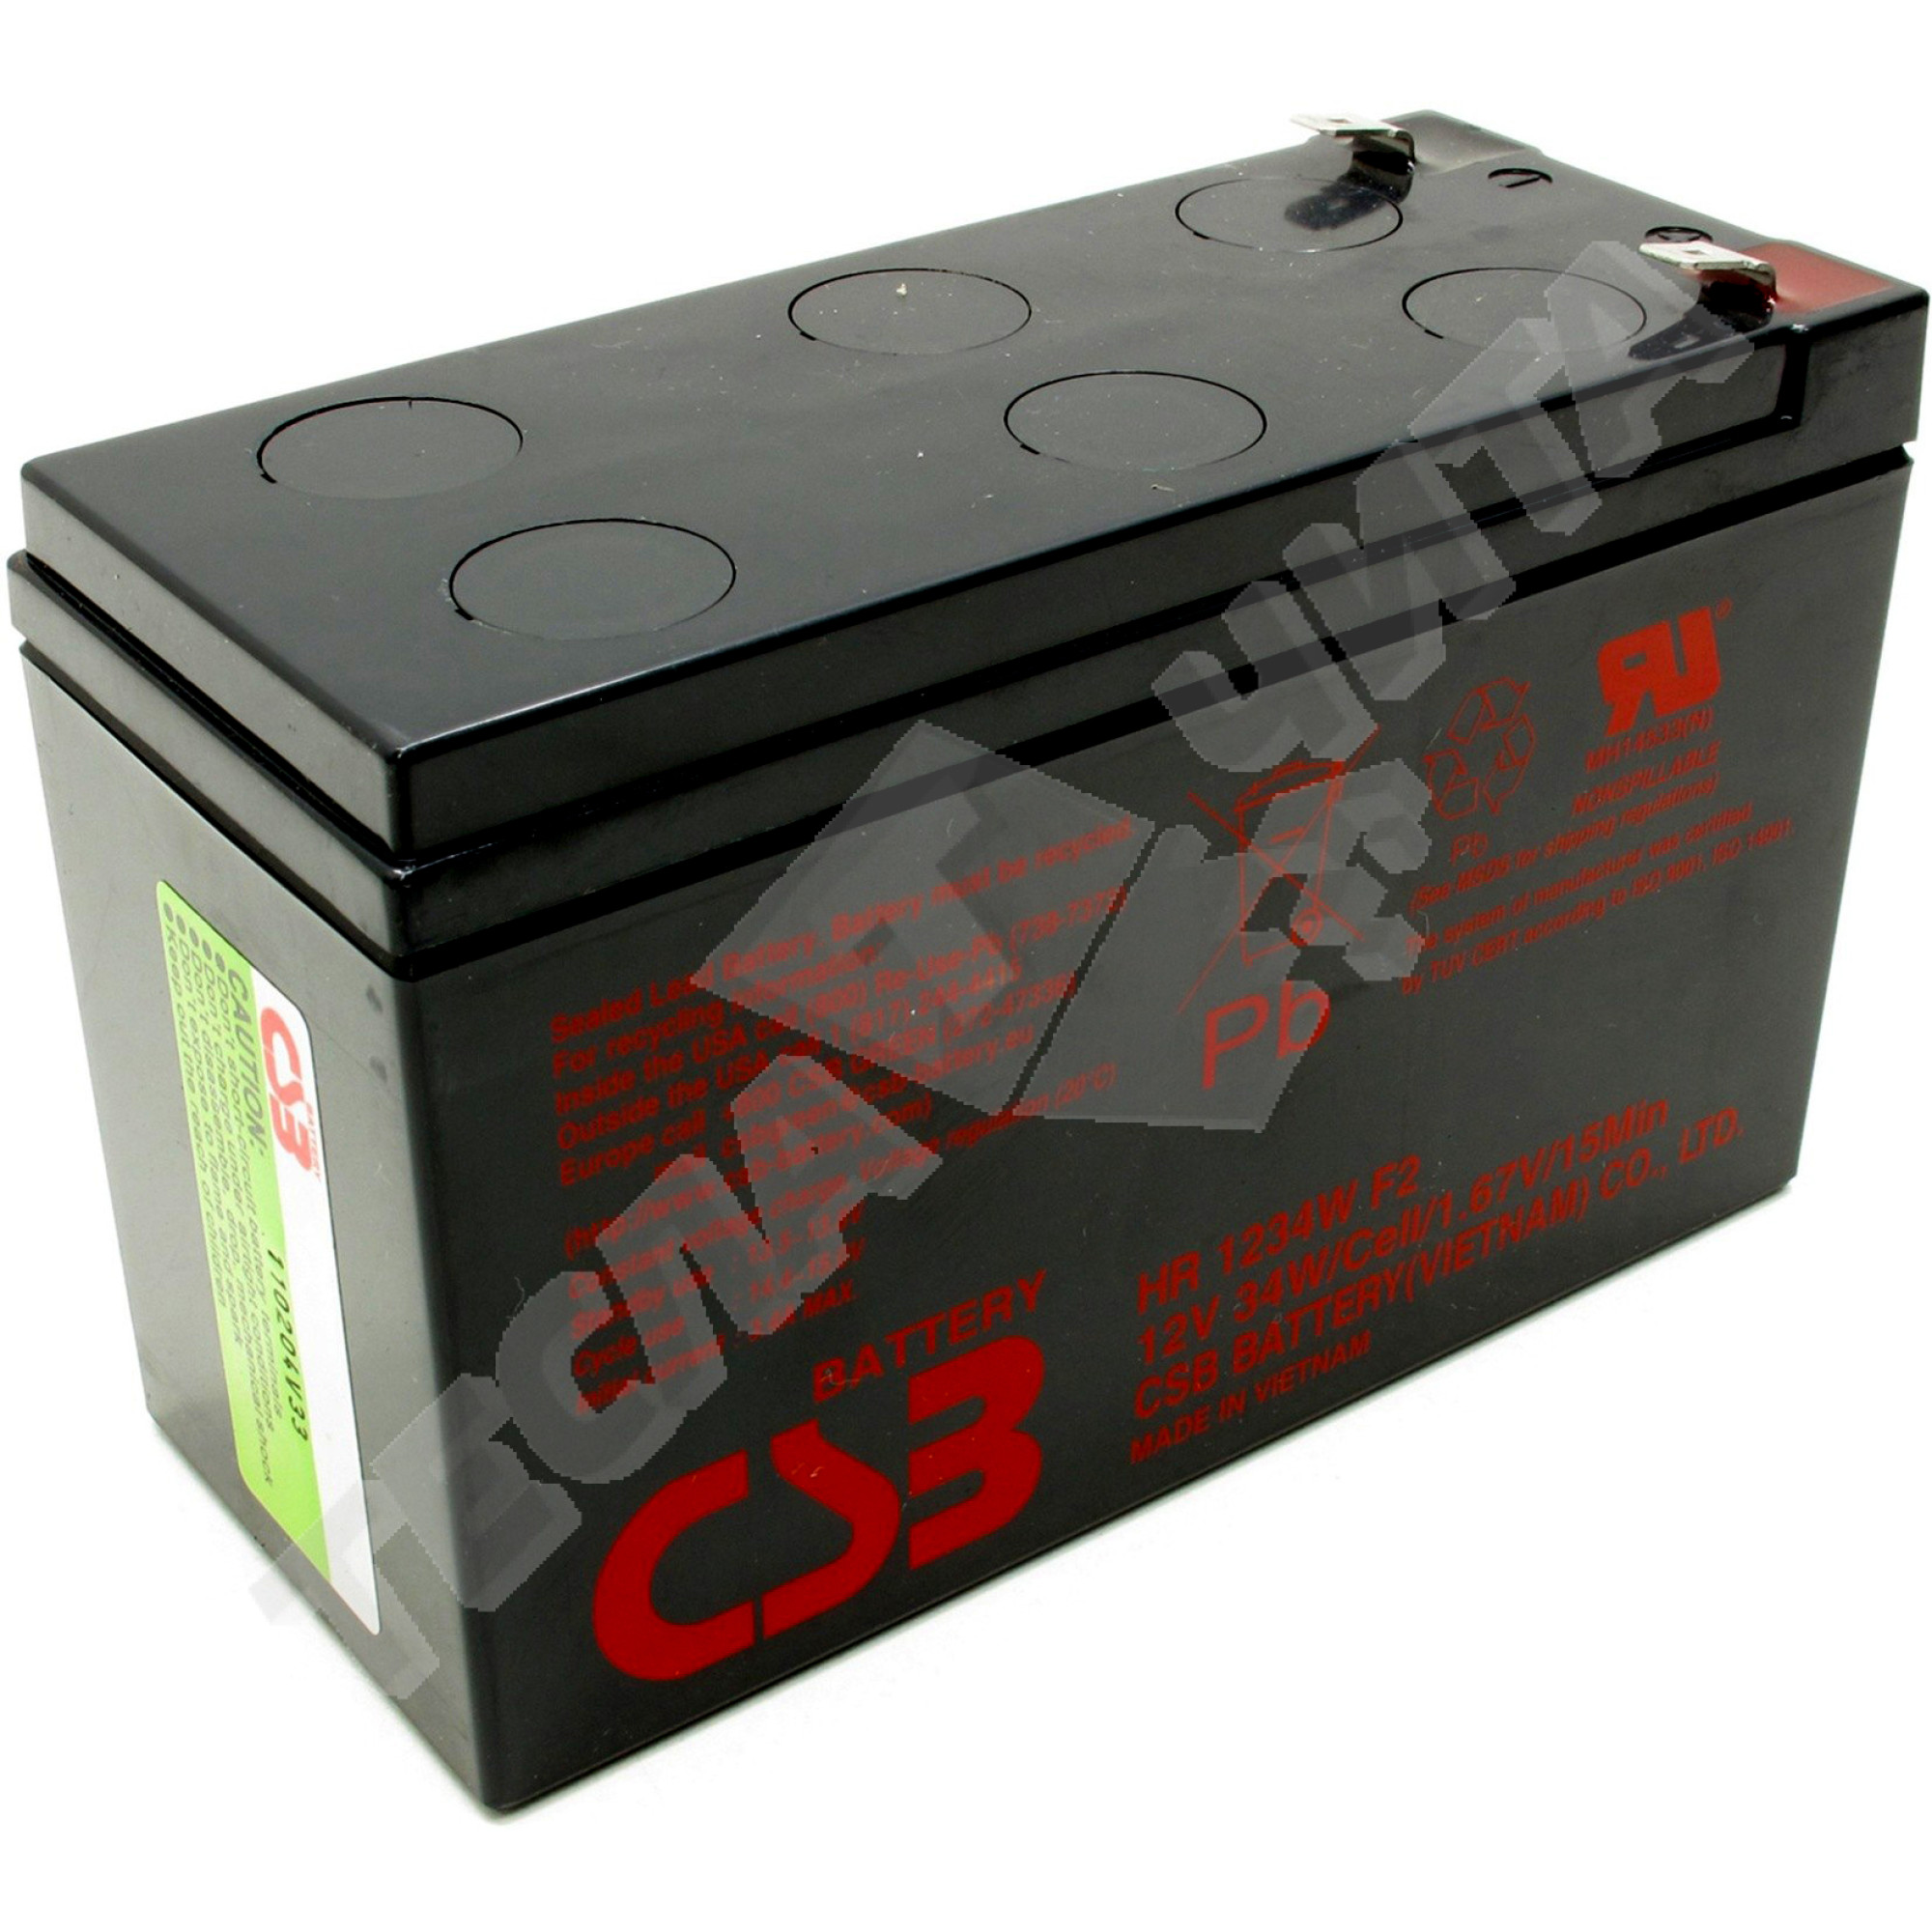 CSB HR 1234w f2. Батарея для ИБП CSB hr1234w f2 12 b/ 9 Aч, шт.. Аккумуляторная батарея HR 1234 W f2 34w/Cell/1.67v/15 min или его аналог. 12в/9 а*ч, CSB Battery hr1234w f2 или аналог.